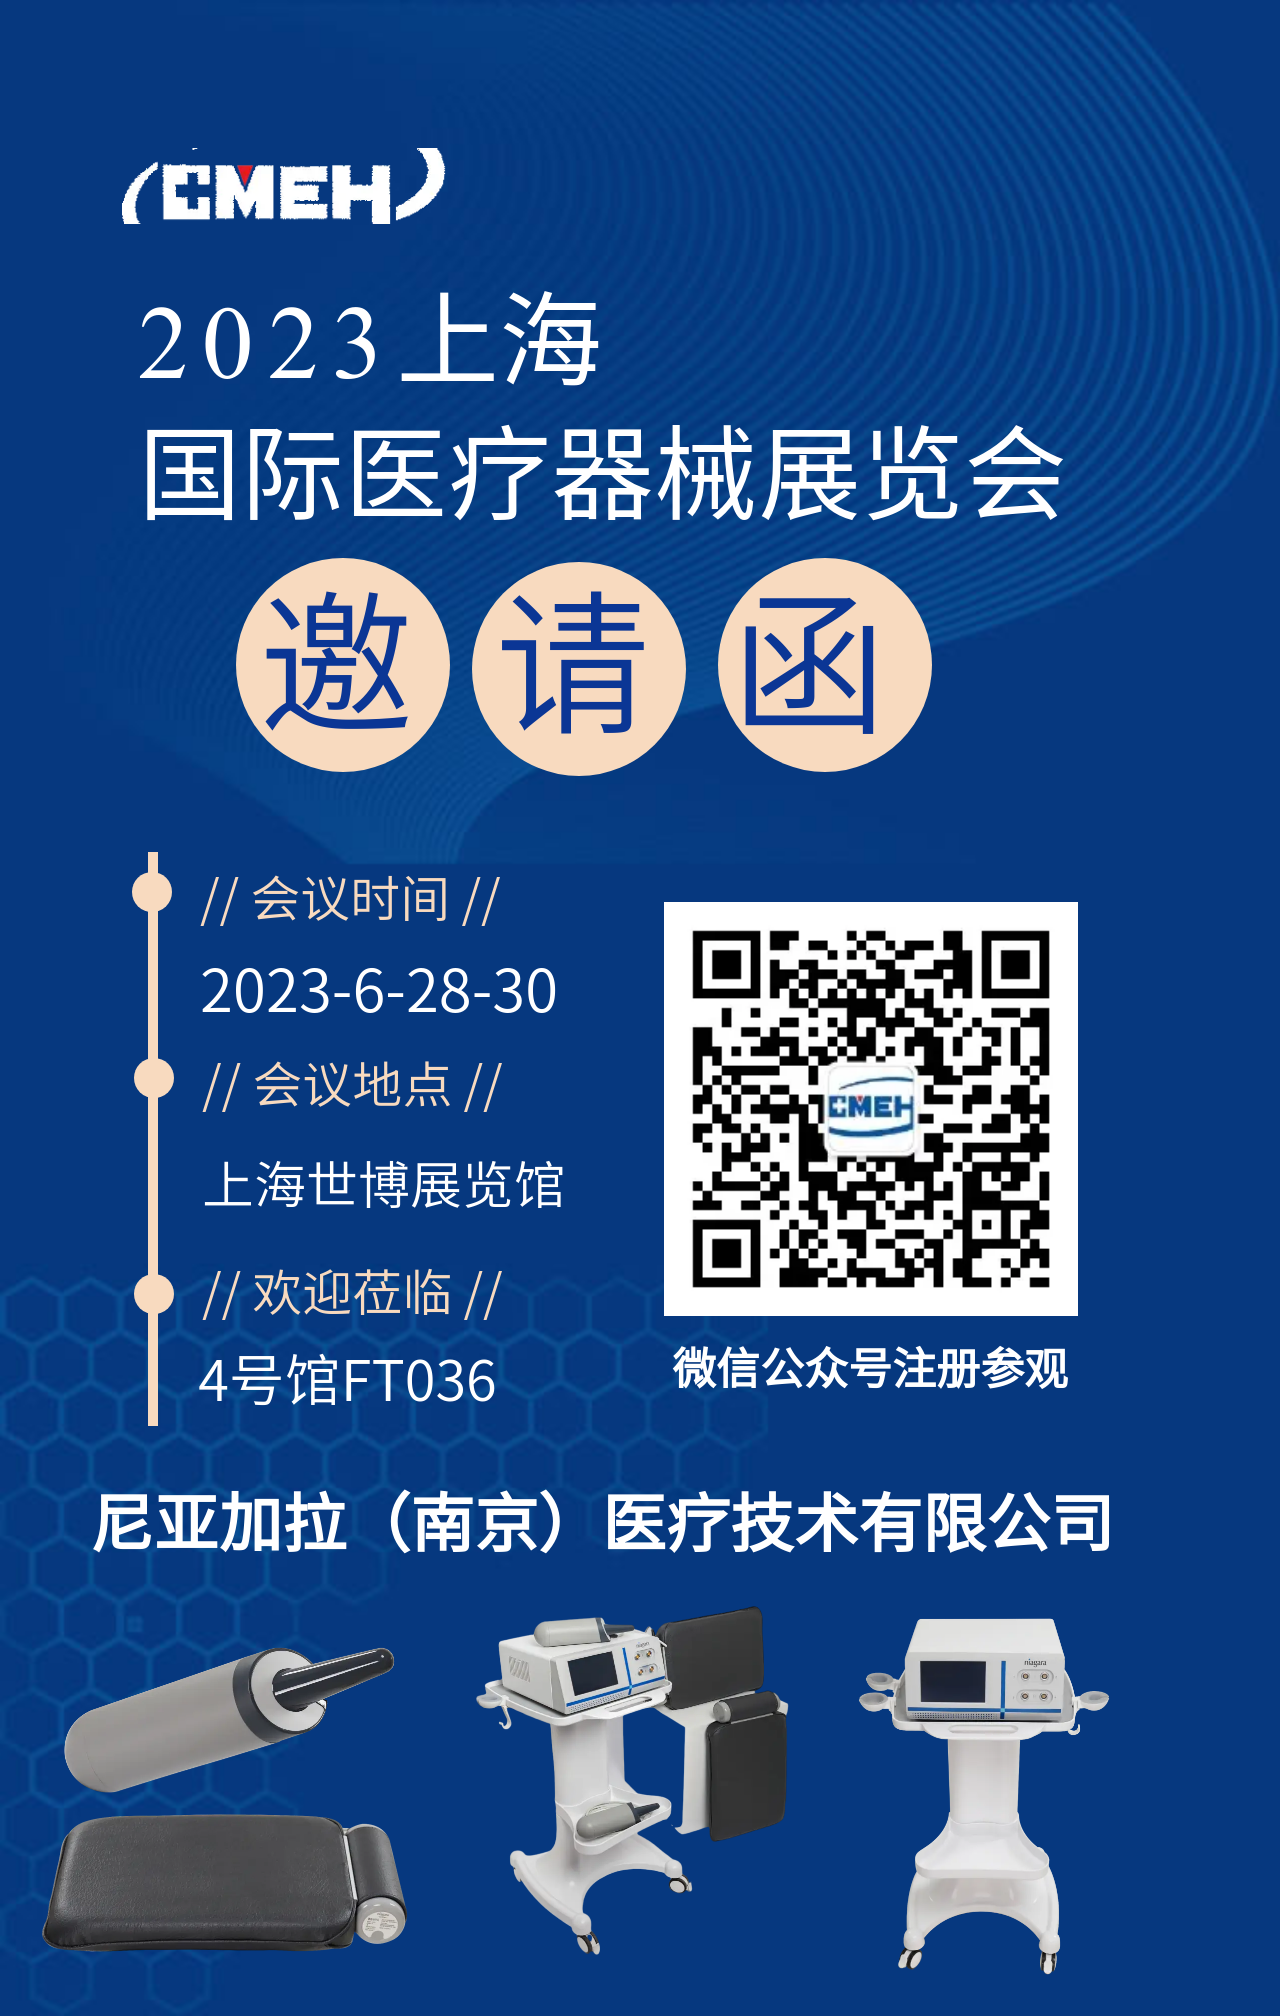 展商推荐：尼亚加拉（南京）医疗技术有限公司邀您参观上海医疗器械展会